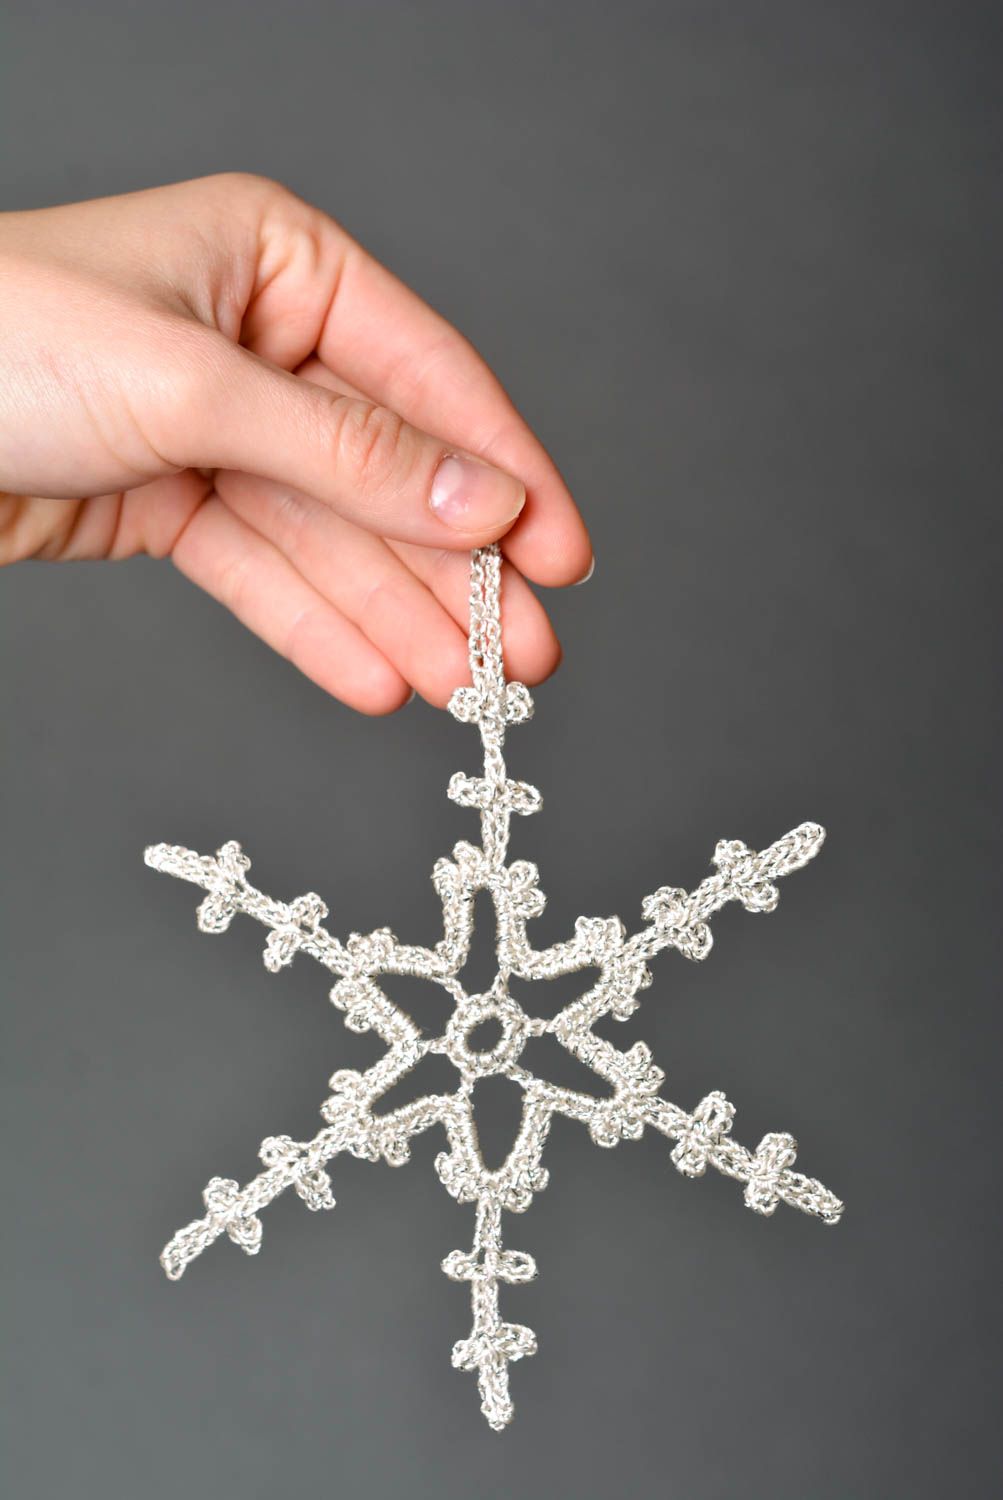 Вязаная снежинка крючком хэнд мейд декоративная подвеска новогоднее украшение фото 2